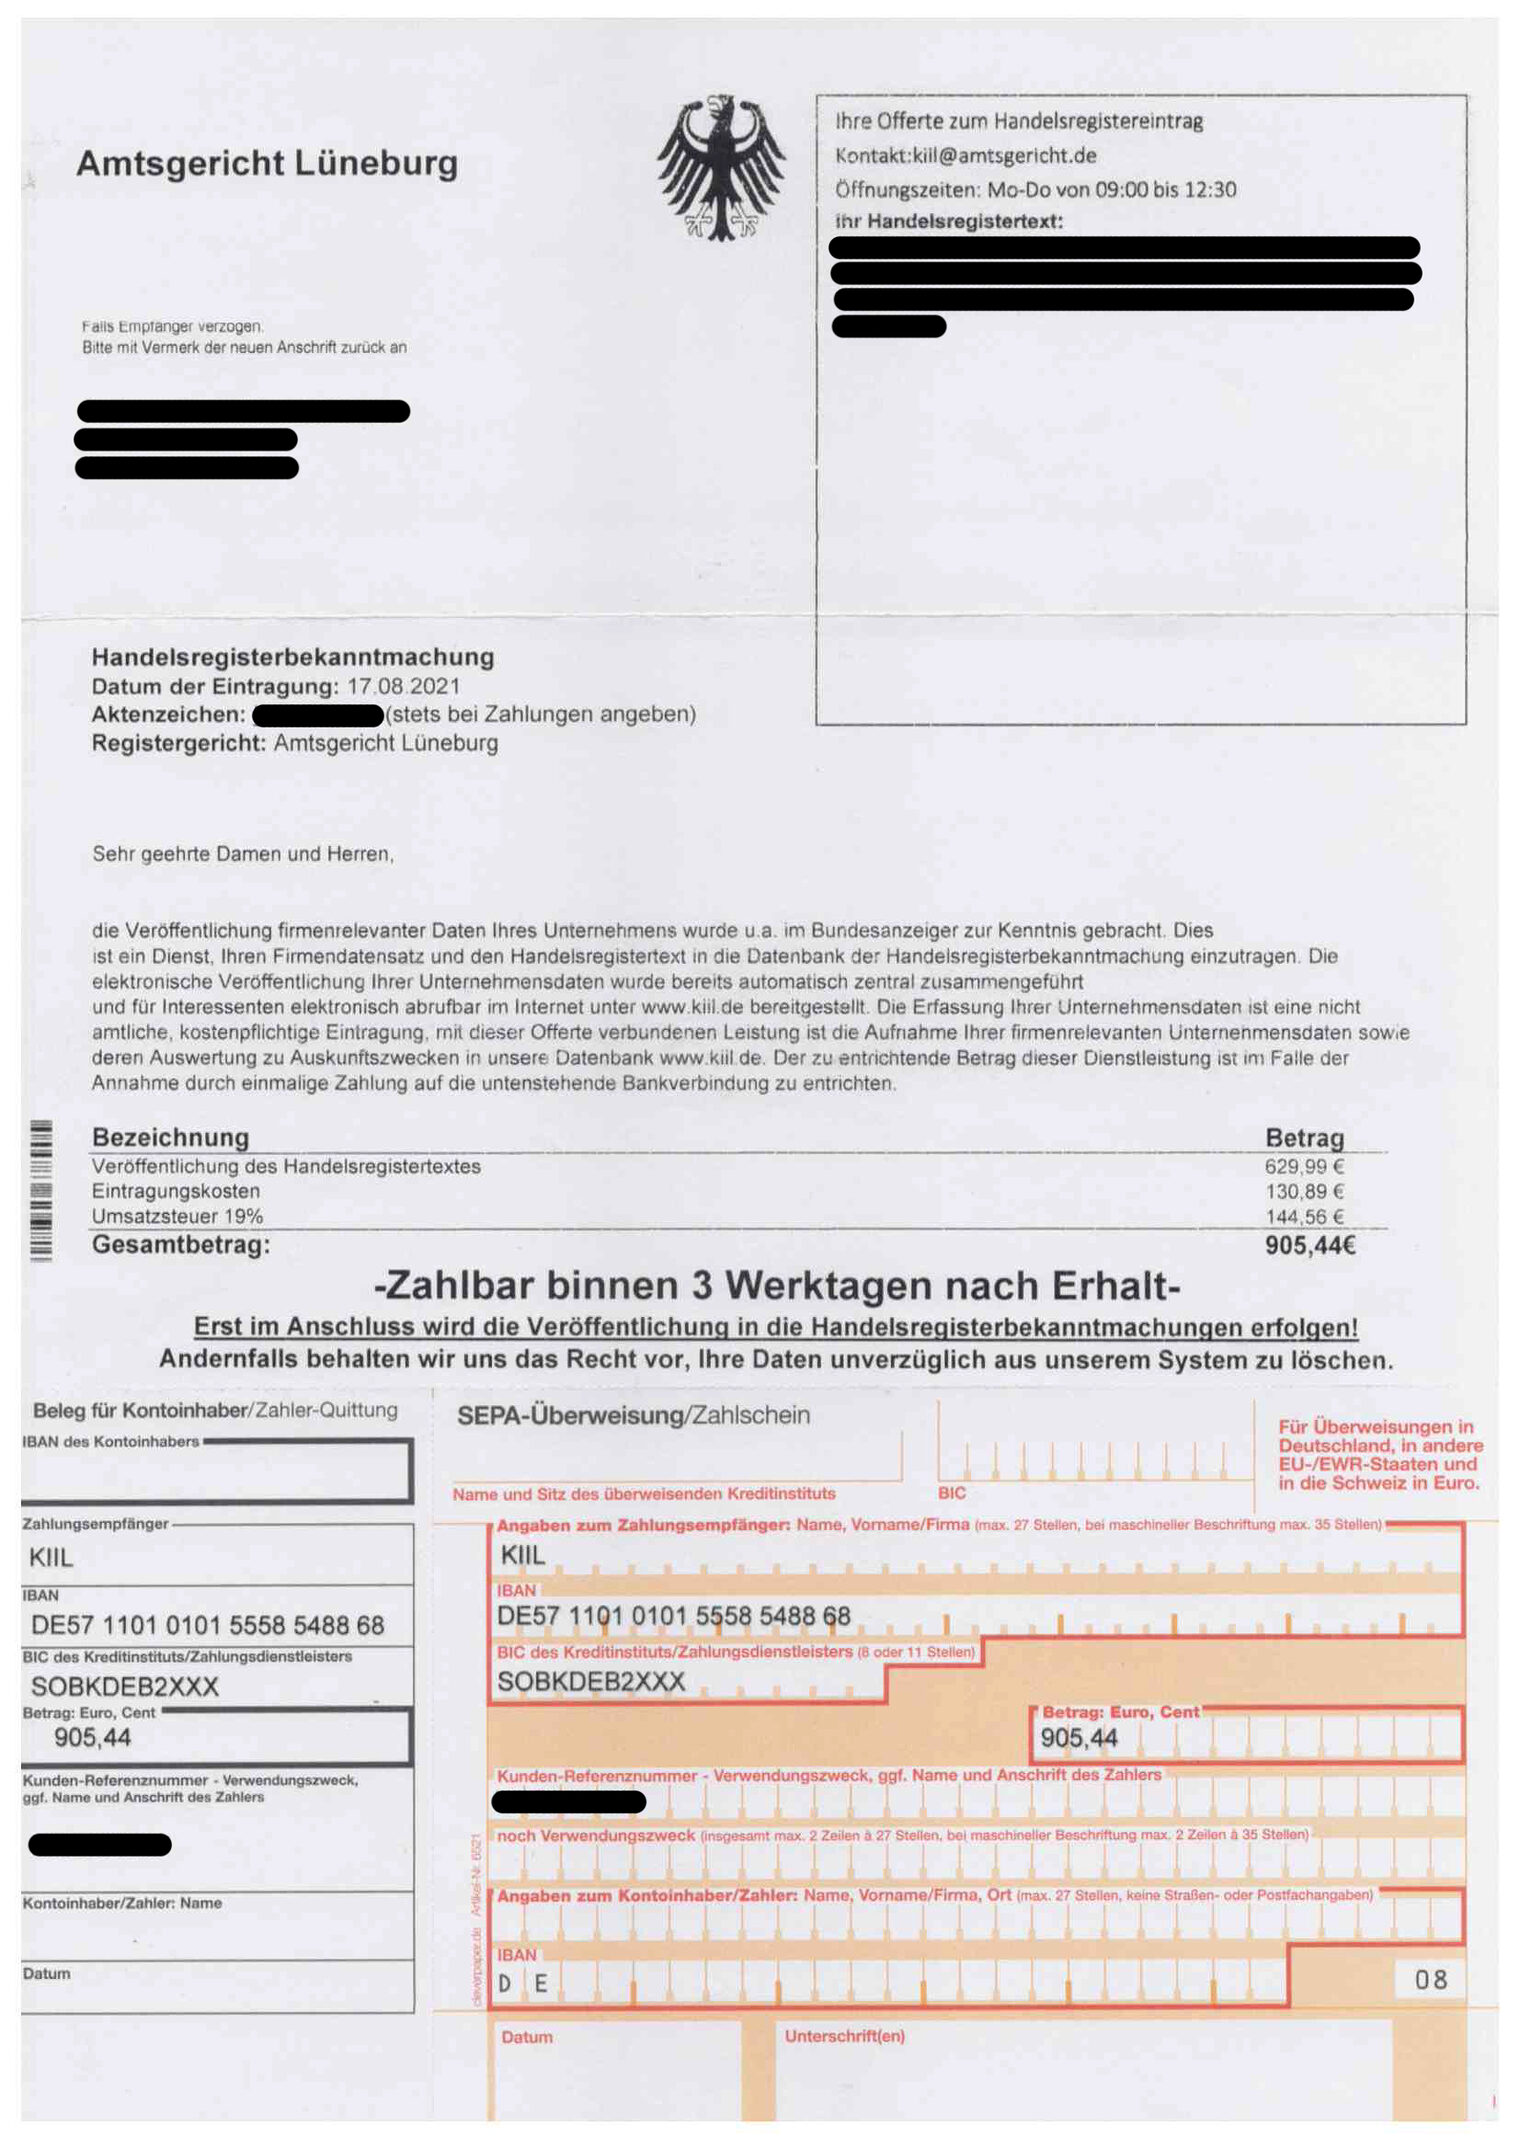 Fake Rechnung Amtsgericht Lüneburg